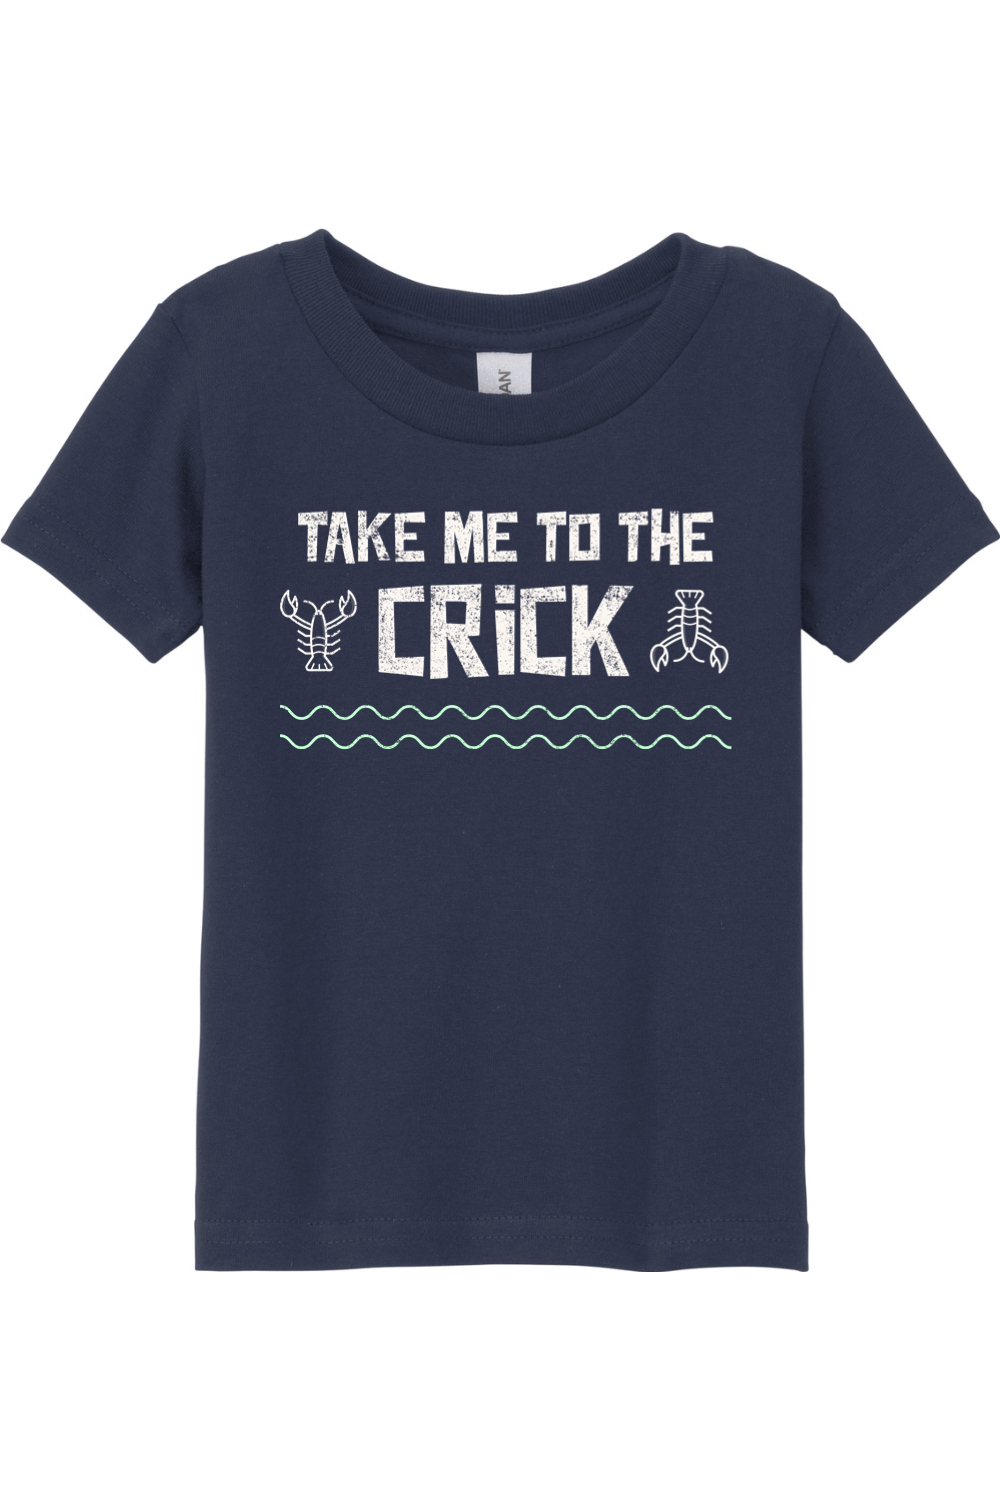 Take Me To The Crick - Toddler Tee - Yinzylvania